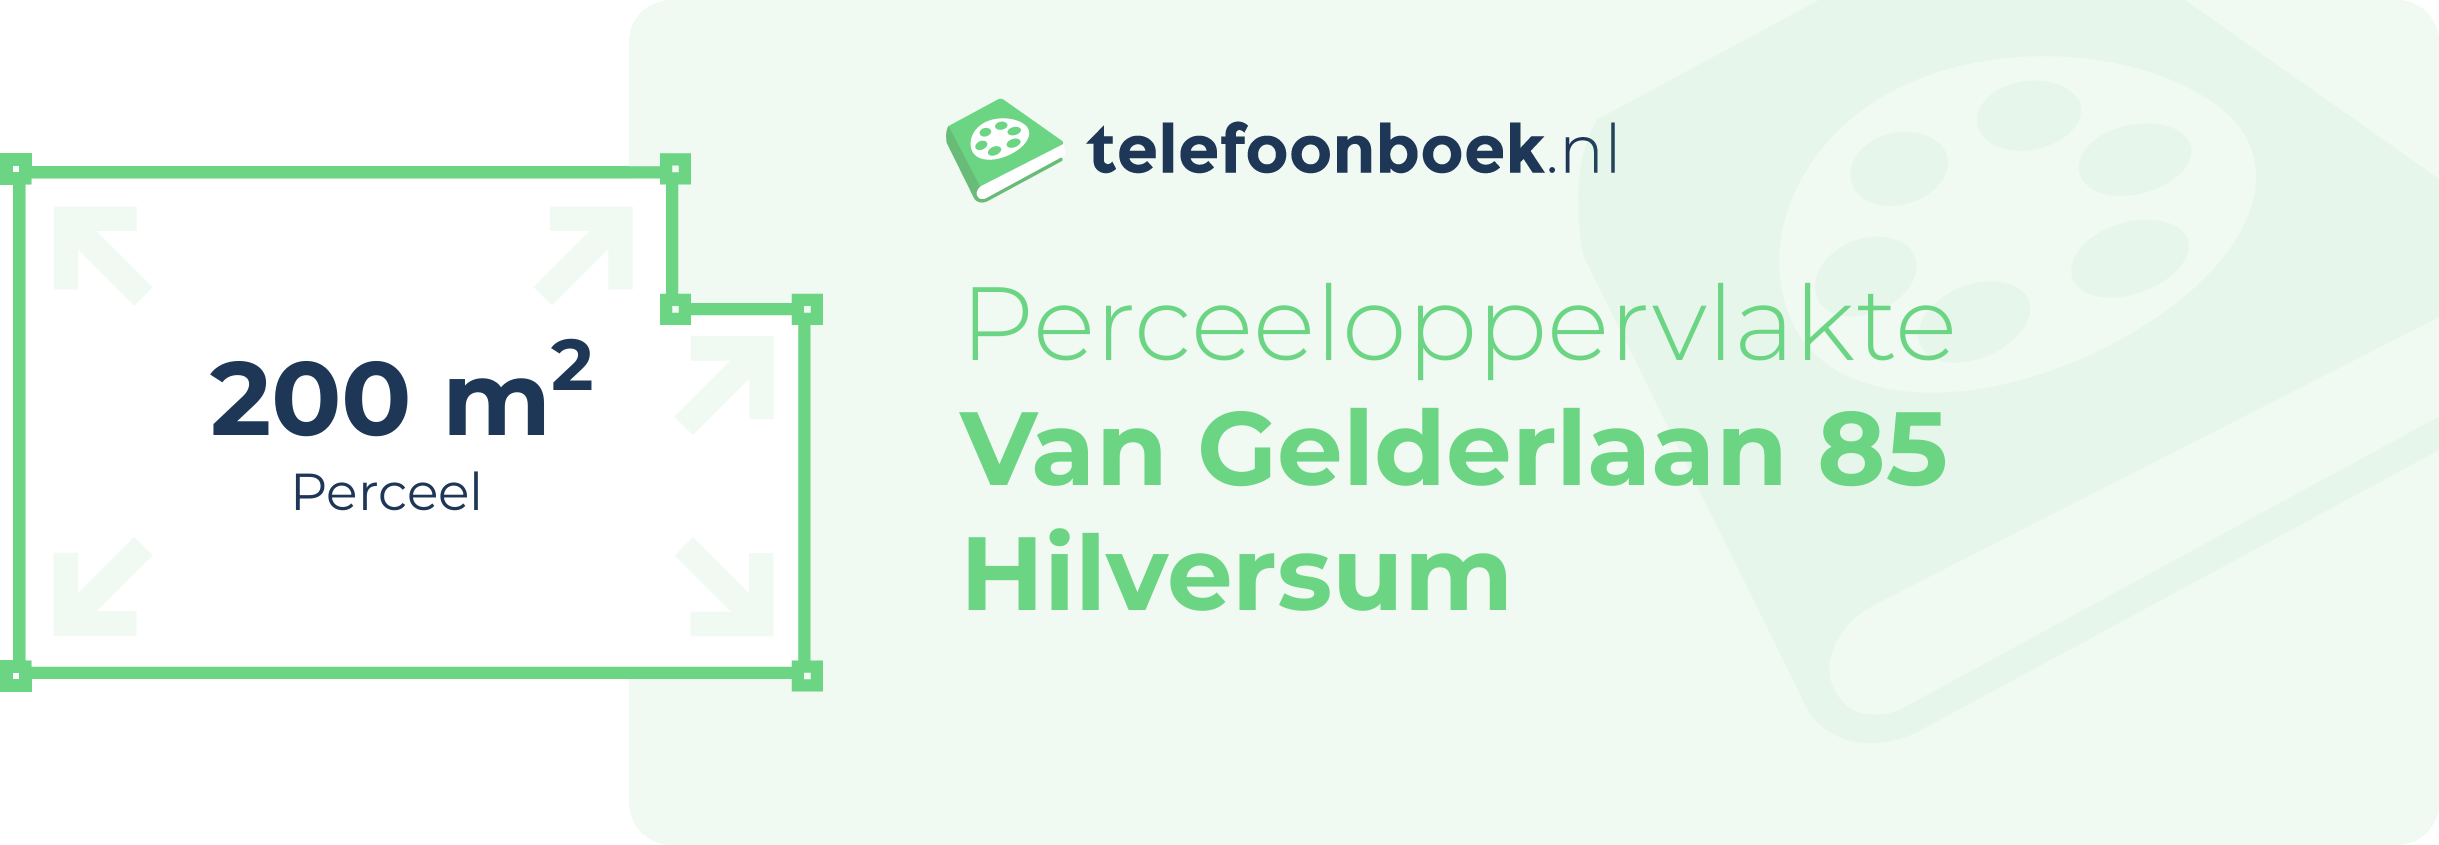 Perceeloppervlakte Van Gelderlaan 85 Hilversum